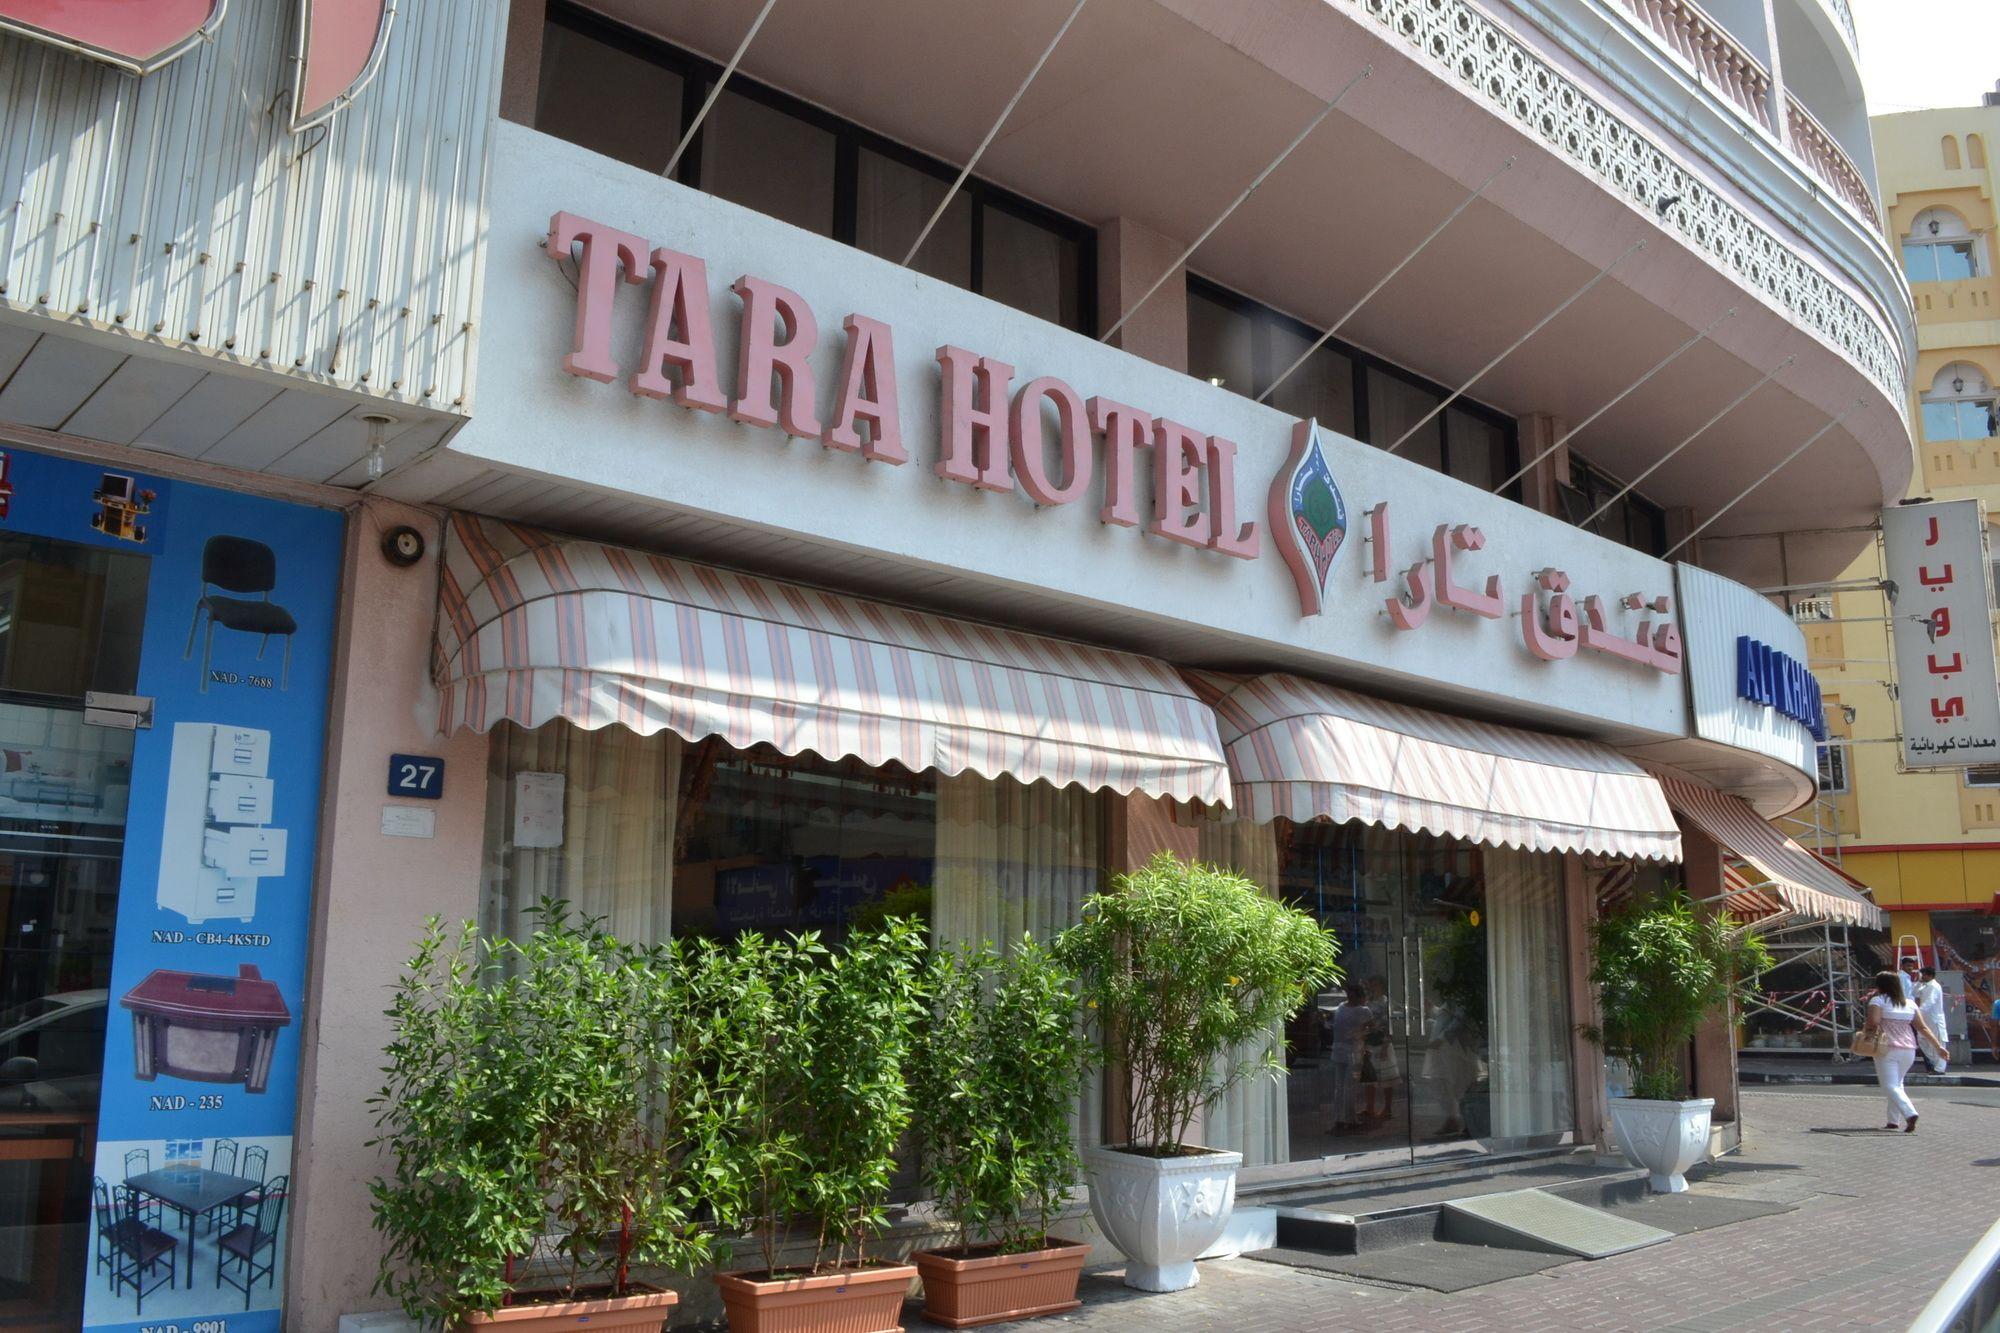 Variados (as) Tara Hotel